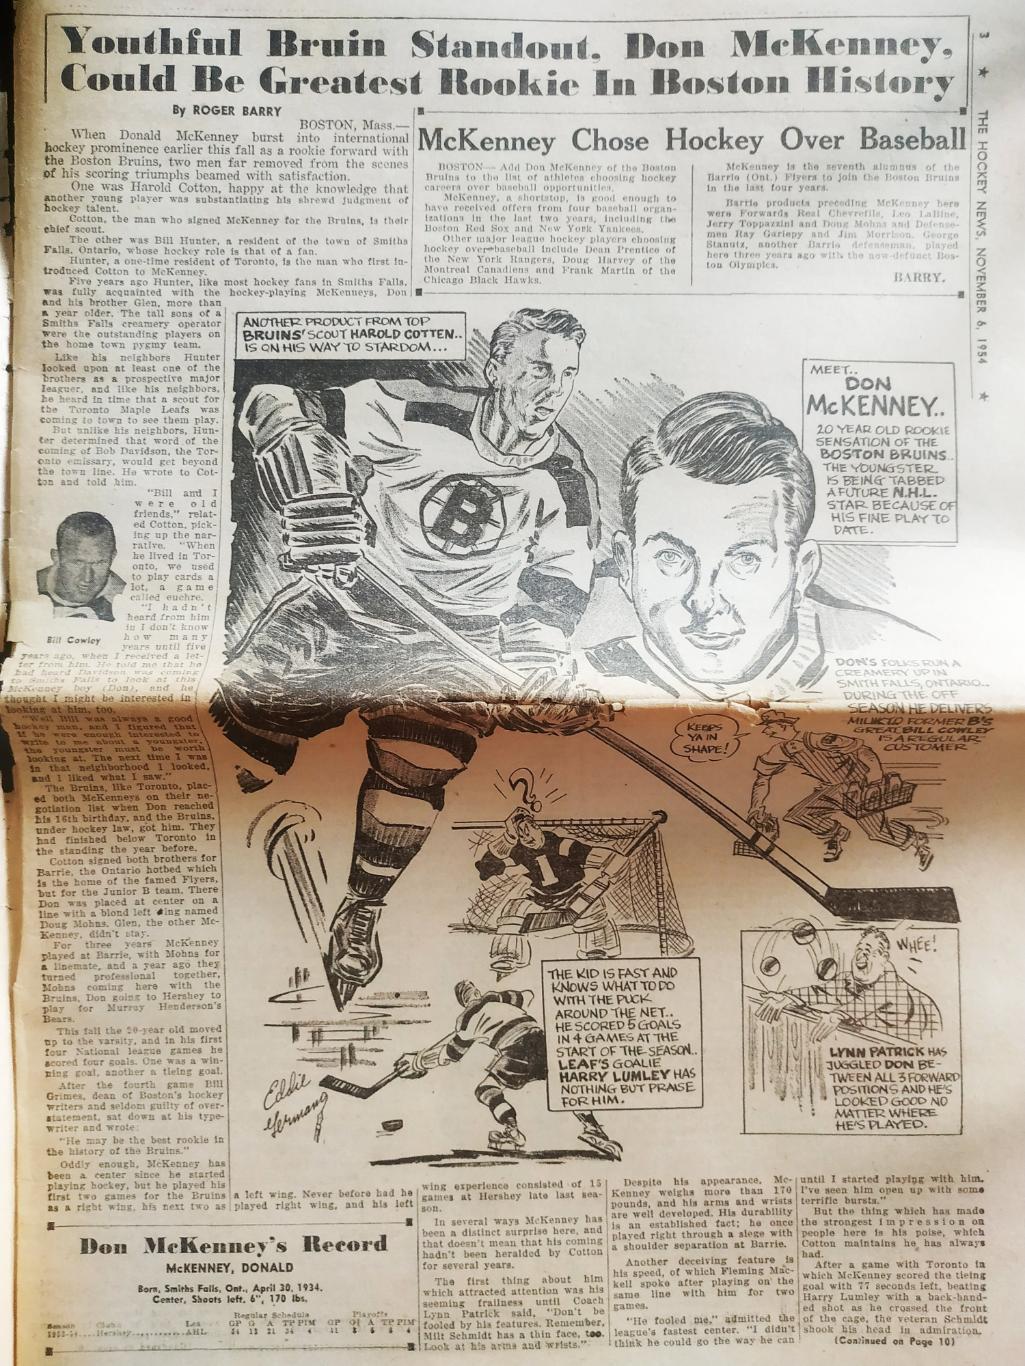 ХОККЕЙ ЖУРНАЛ ЕЖЕНЕДЕЛЬНИК НХЛ НОВОСТИ ХОККЕЯ NOV.6 1954 NHL THE HOCKEY NEWS 1